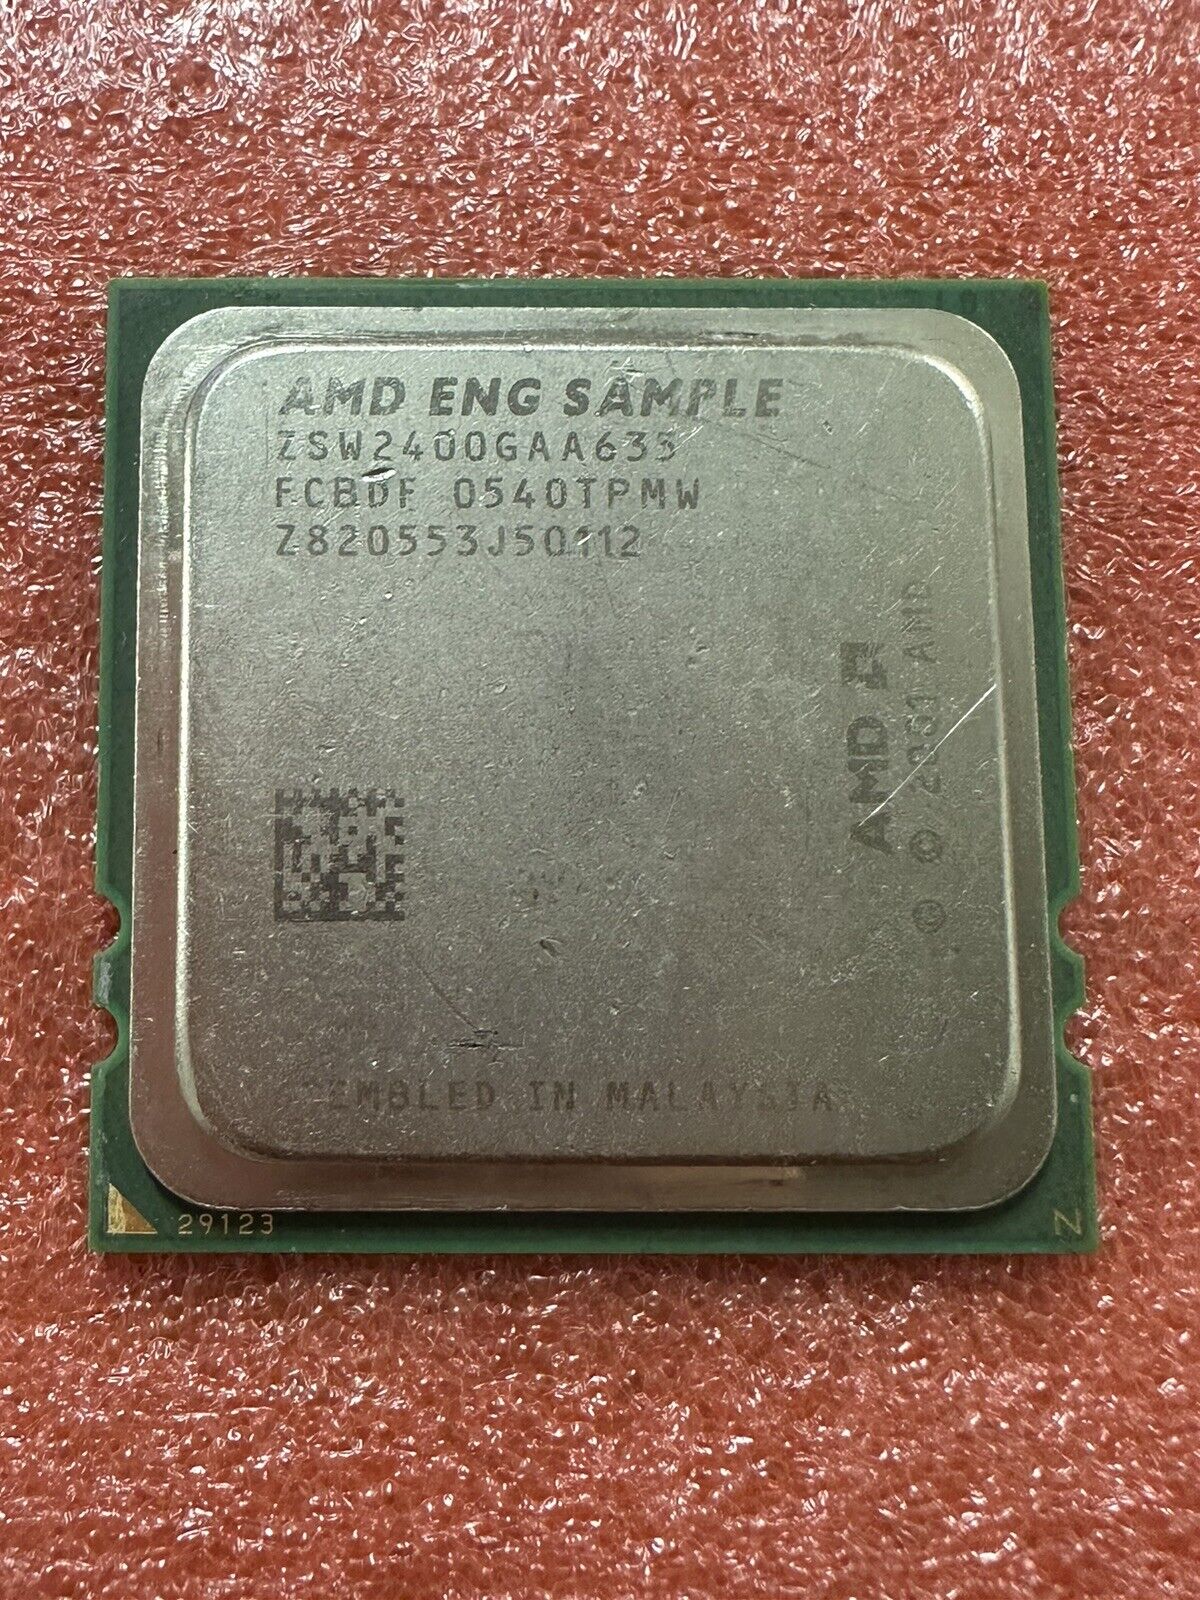 AMD ENG SAMPLE Opteron CPU Sample High Collectible Value ZSW2400GAA635